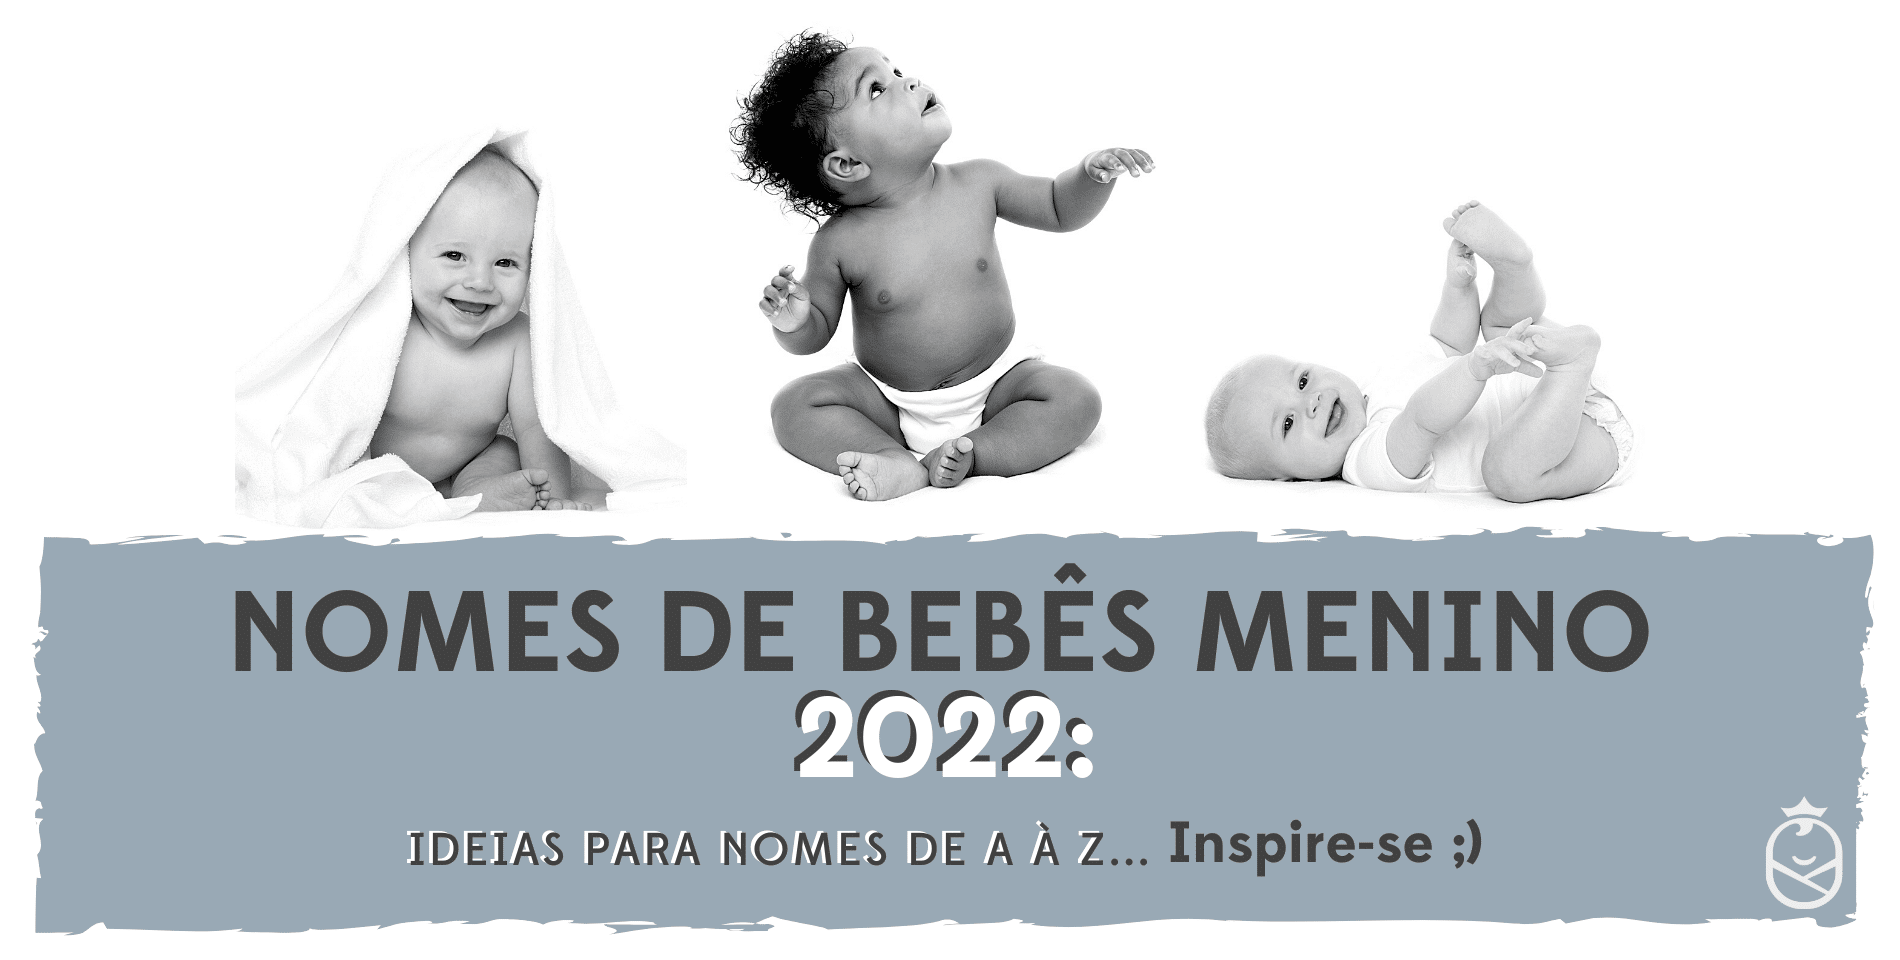 nomes de bebes menino 2022